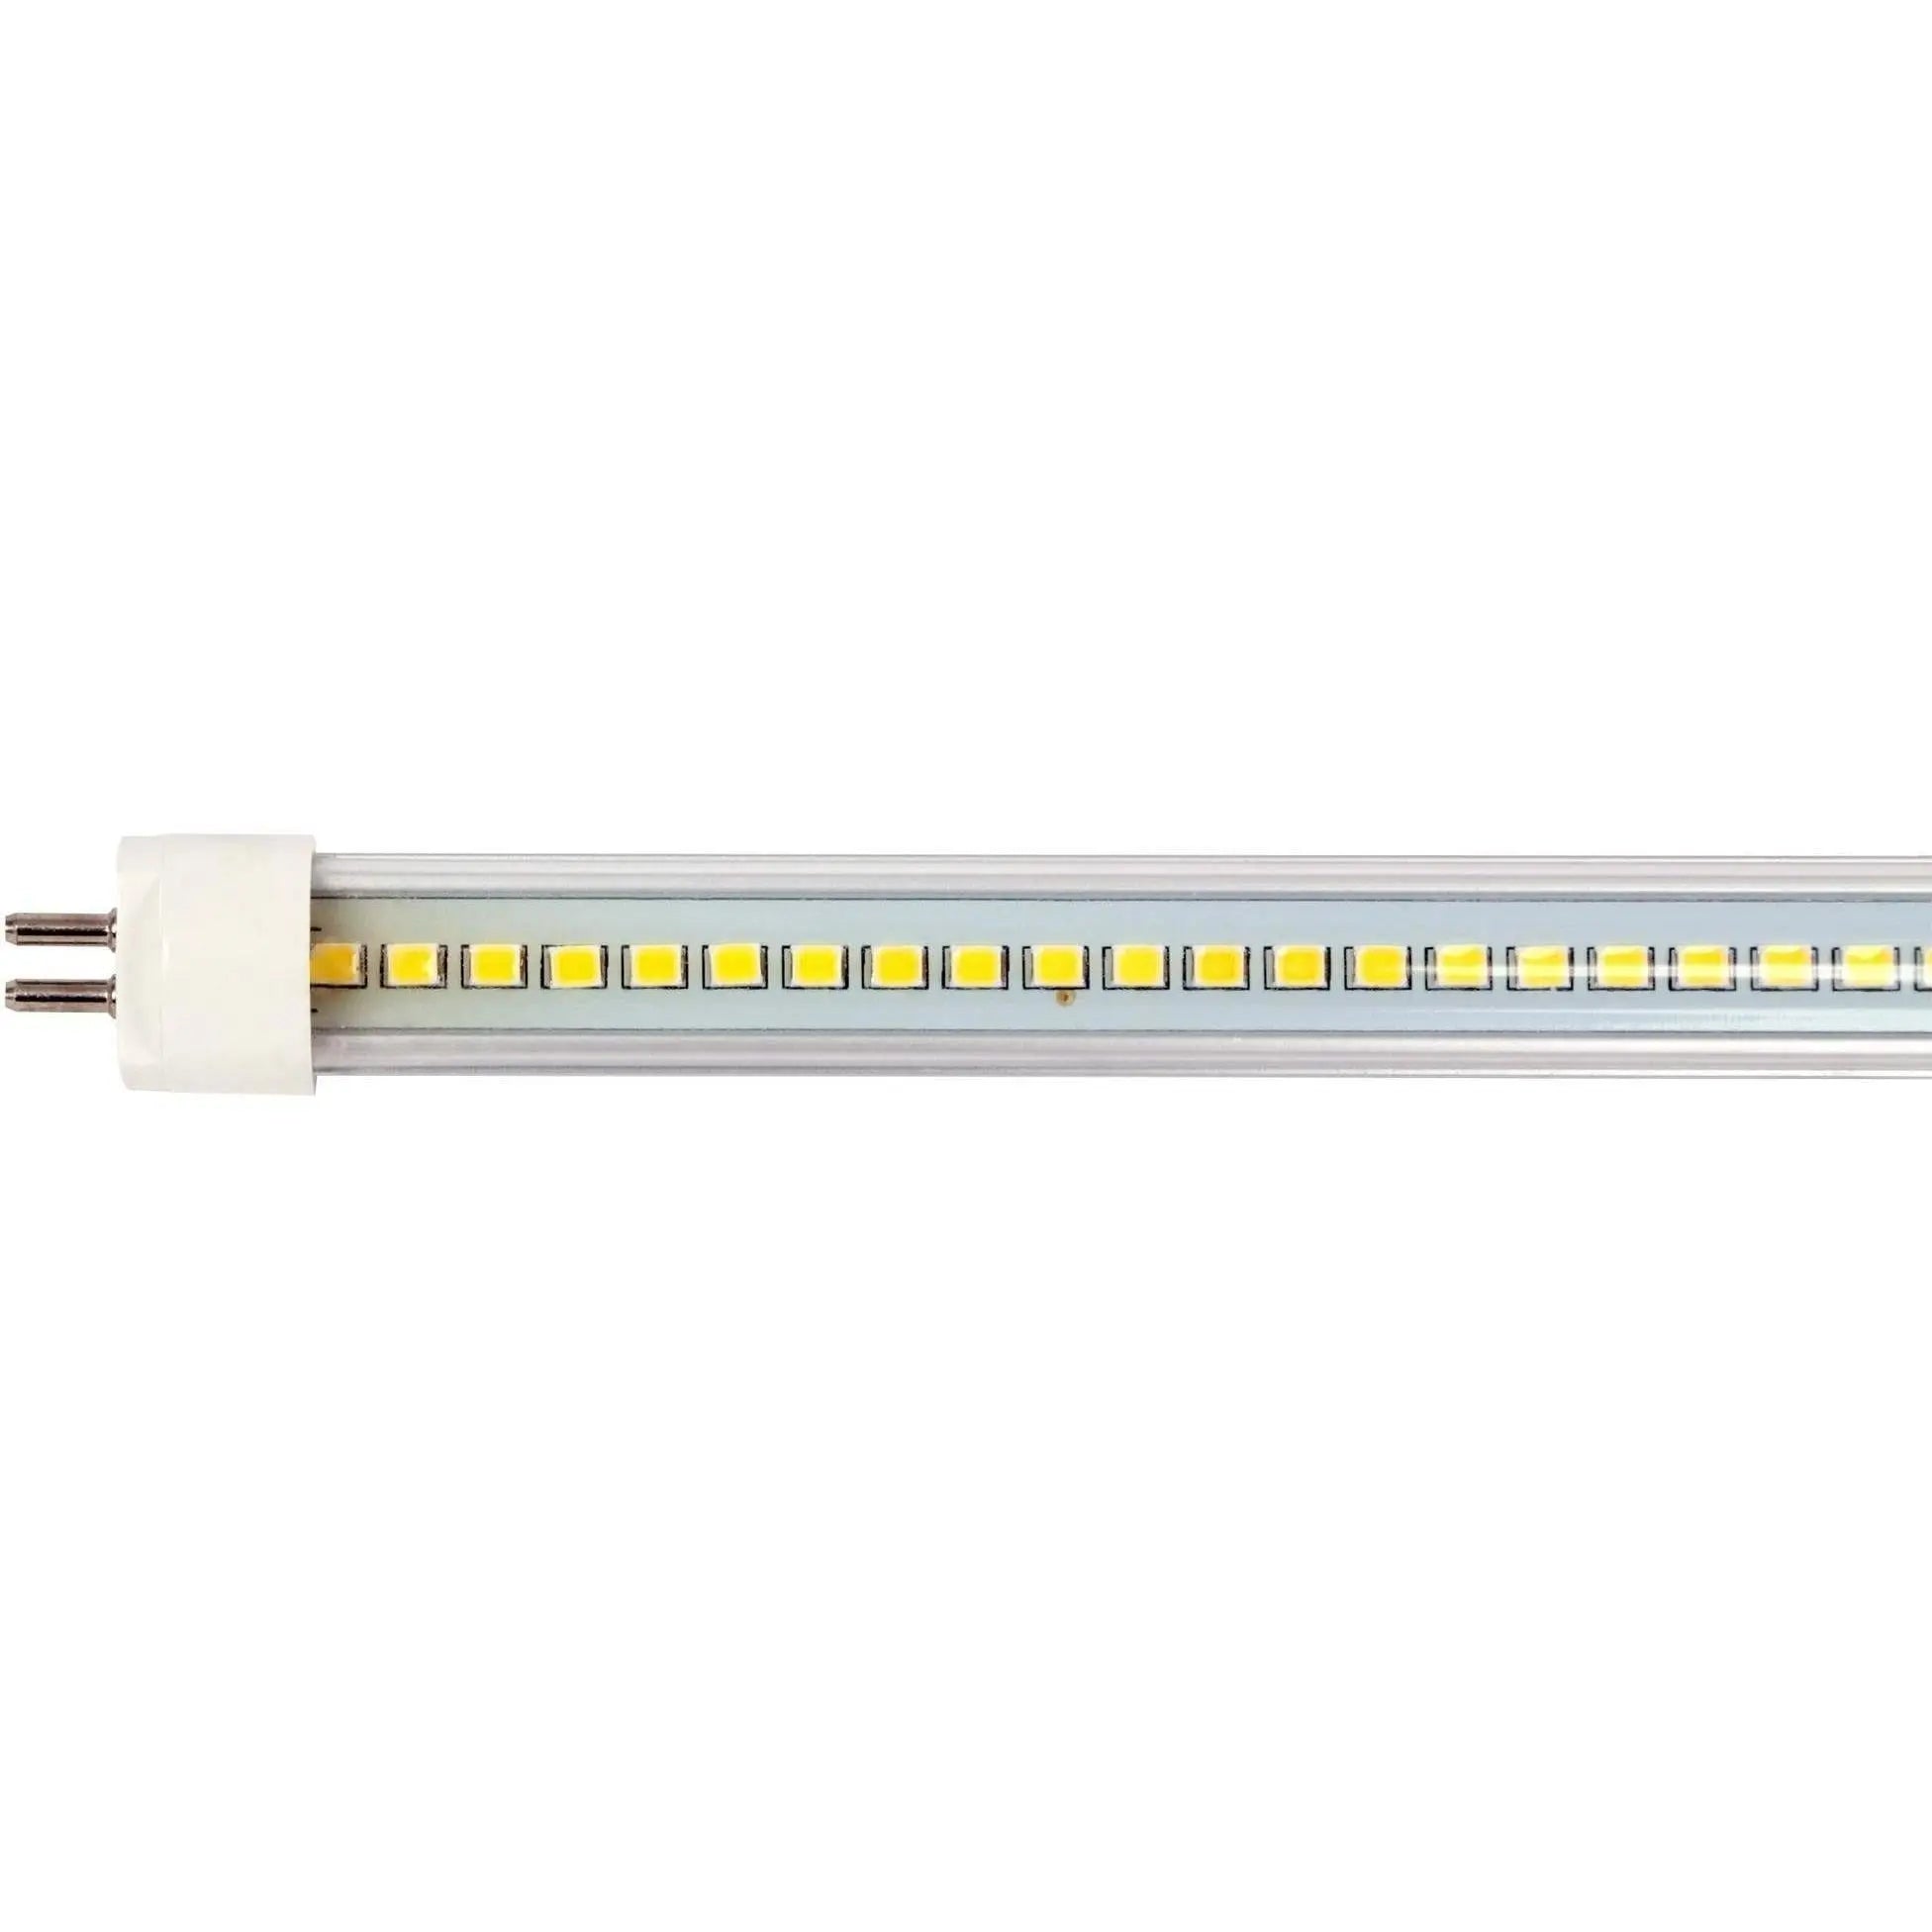 AgroLED iSunlight® 41 Watt T5 Vegetative LED Grow Lamp, 4' AgroLED